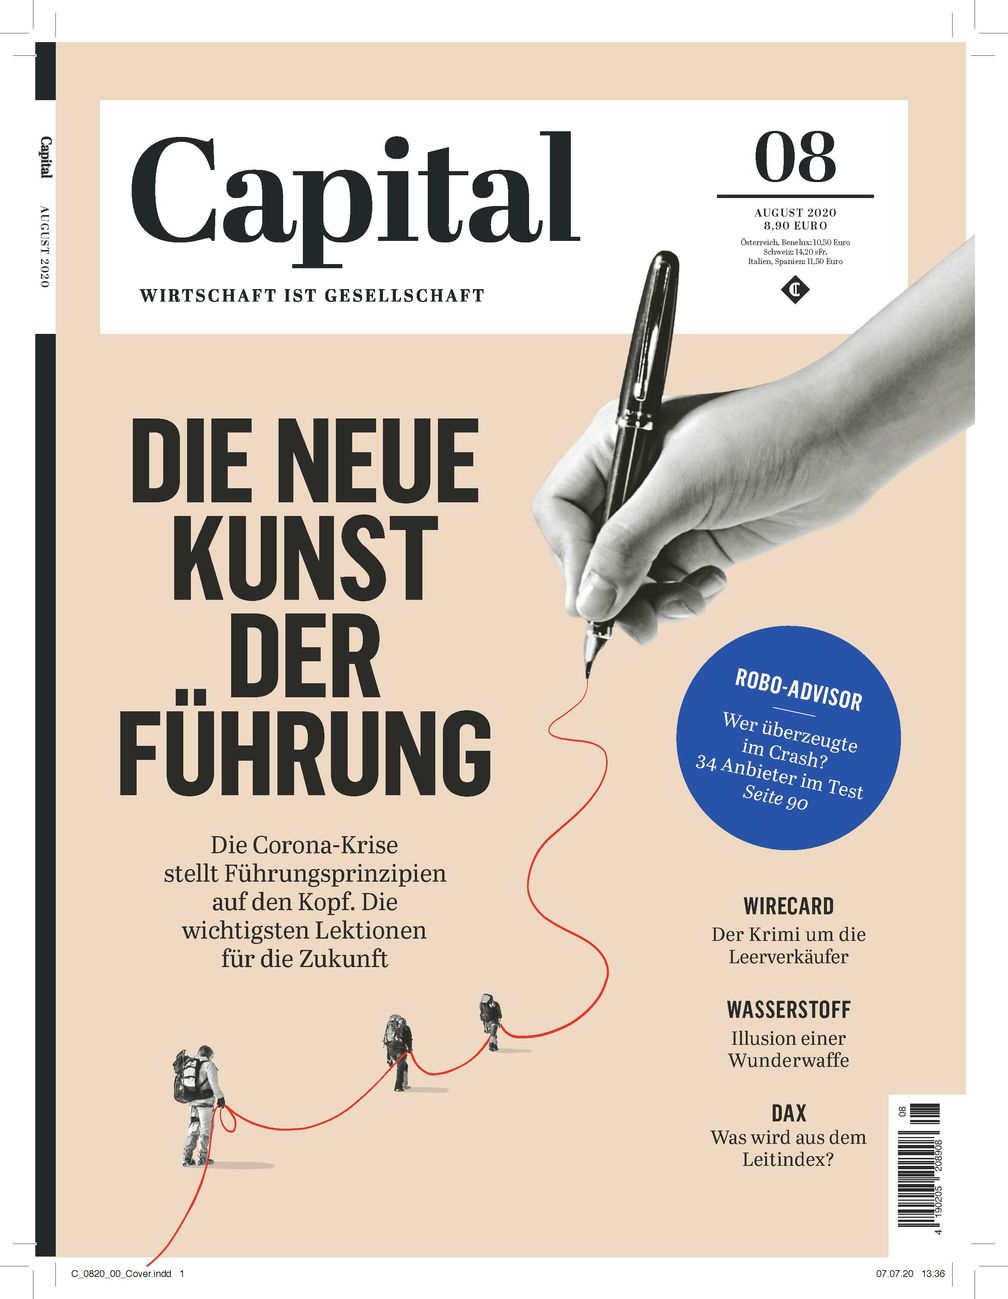 Bild: "obs/Capital, G+J Wirtschaftsmedien"